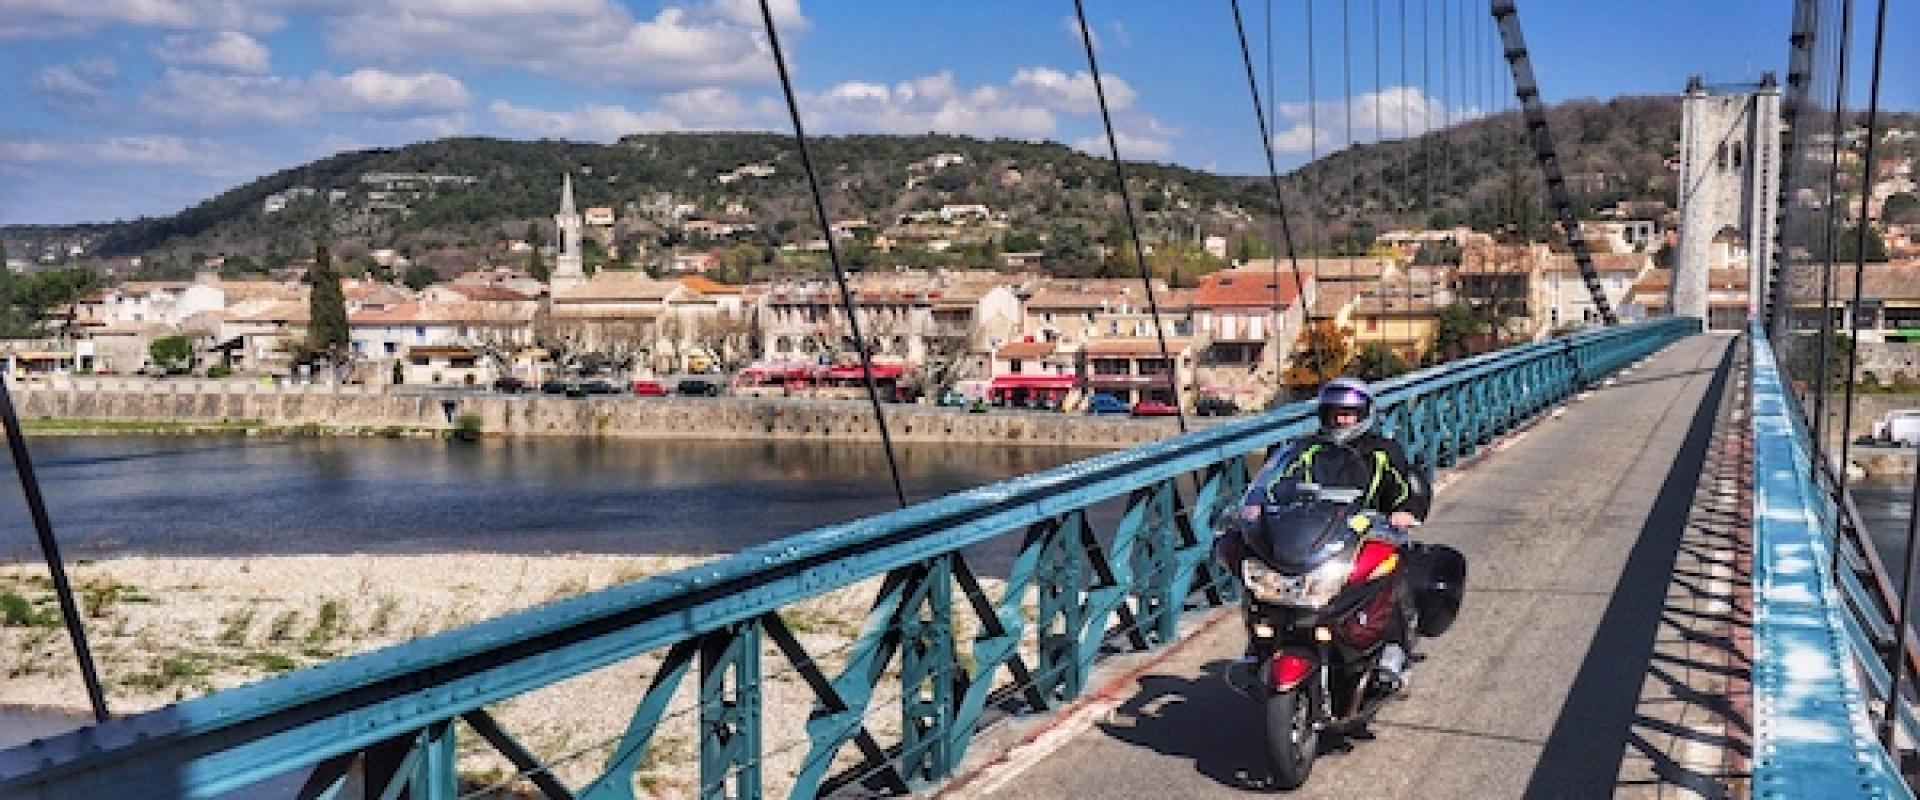 Ardèche-Brücke bei Saint-Martin-d'Ardèche.jpg